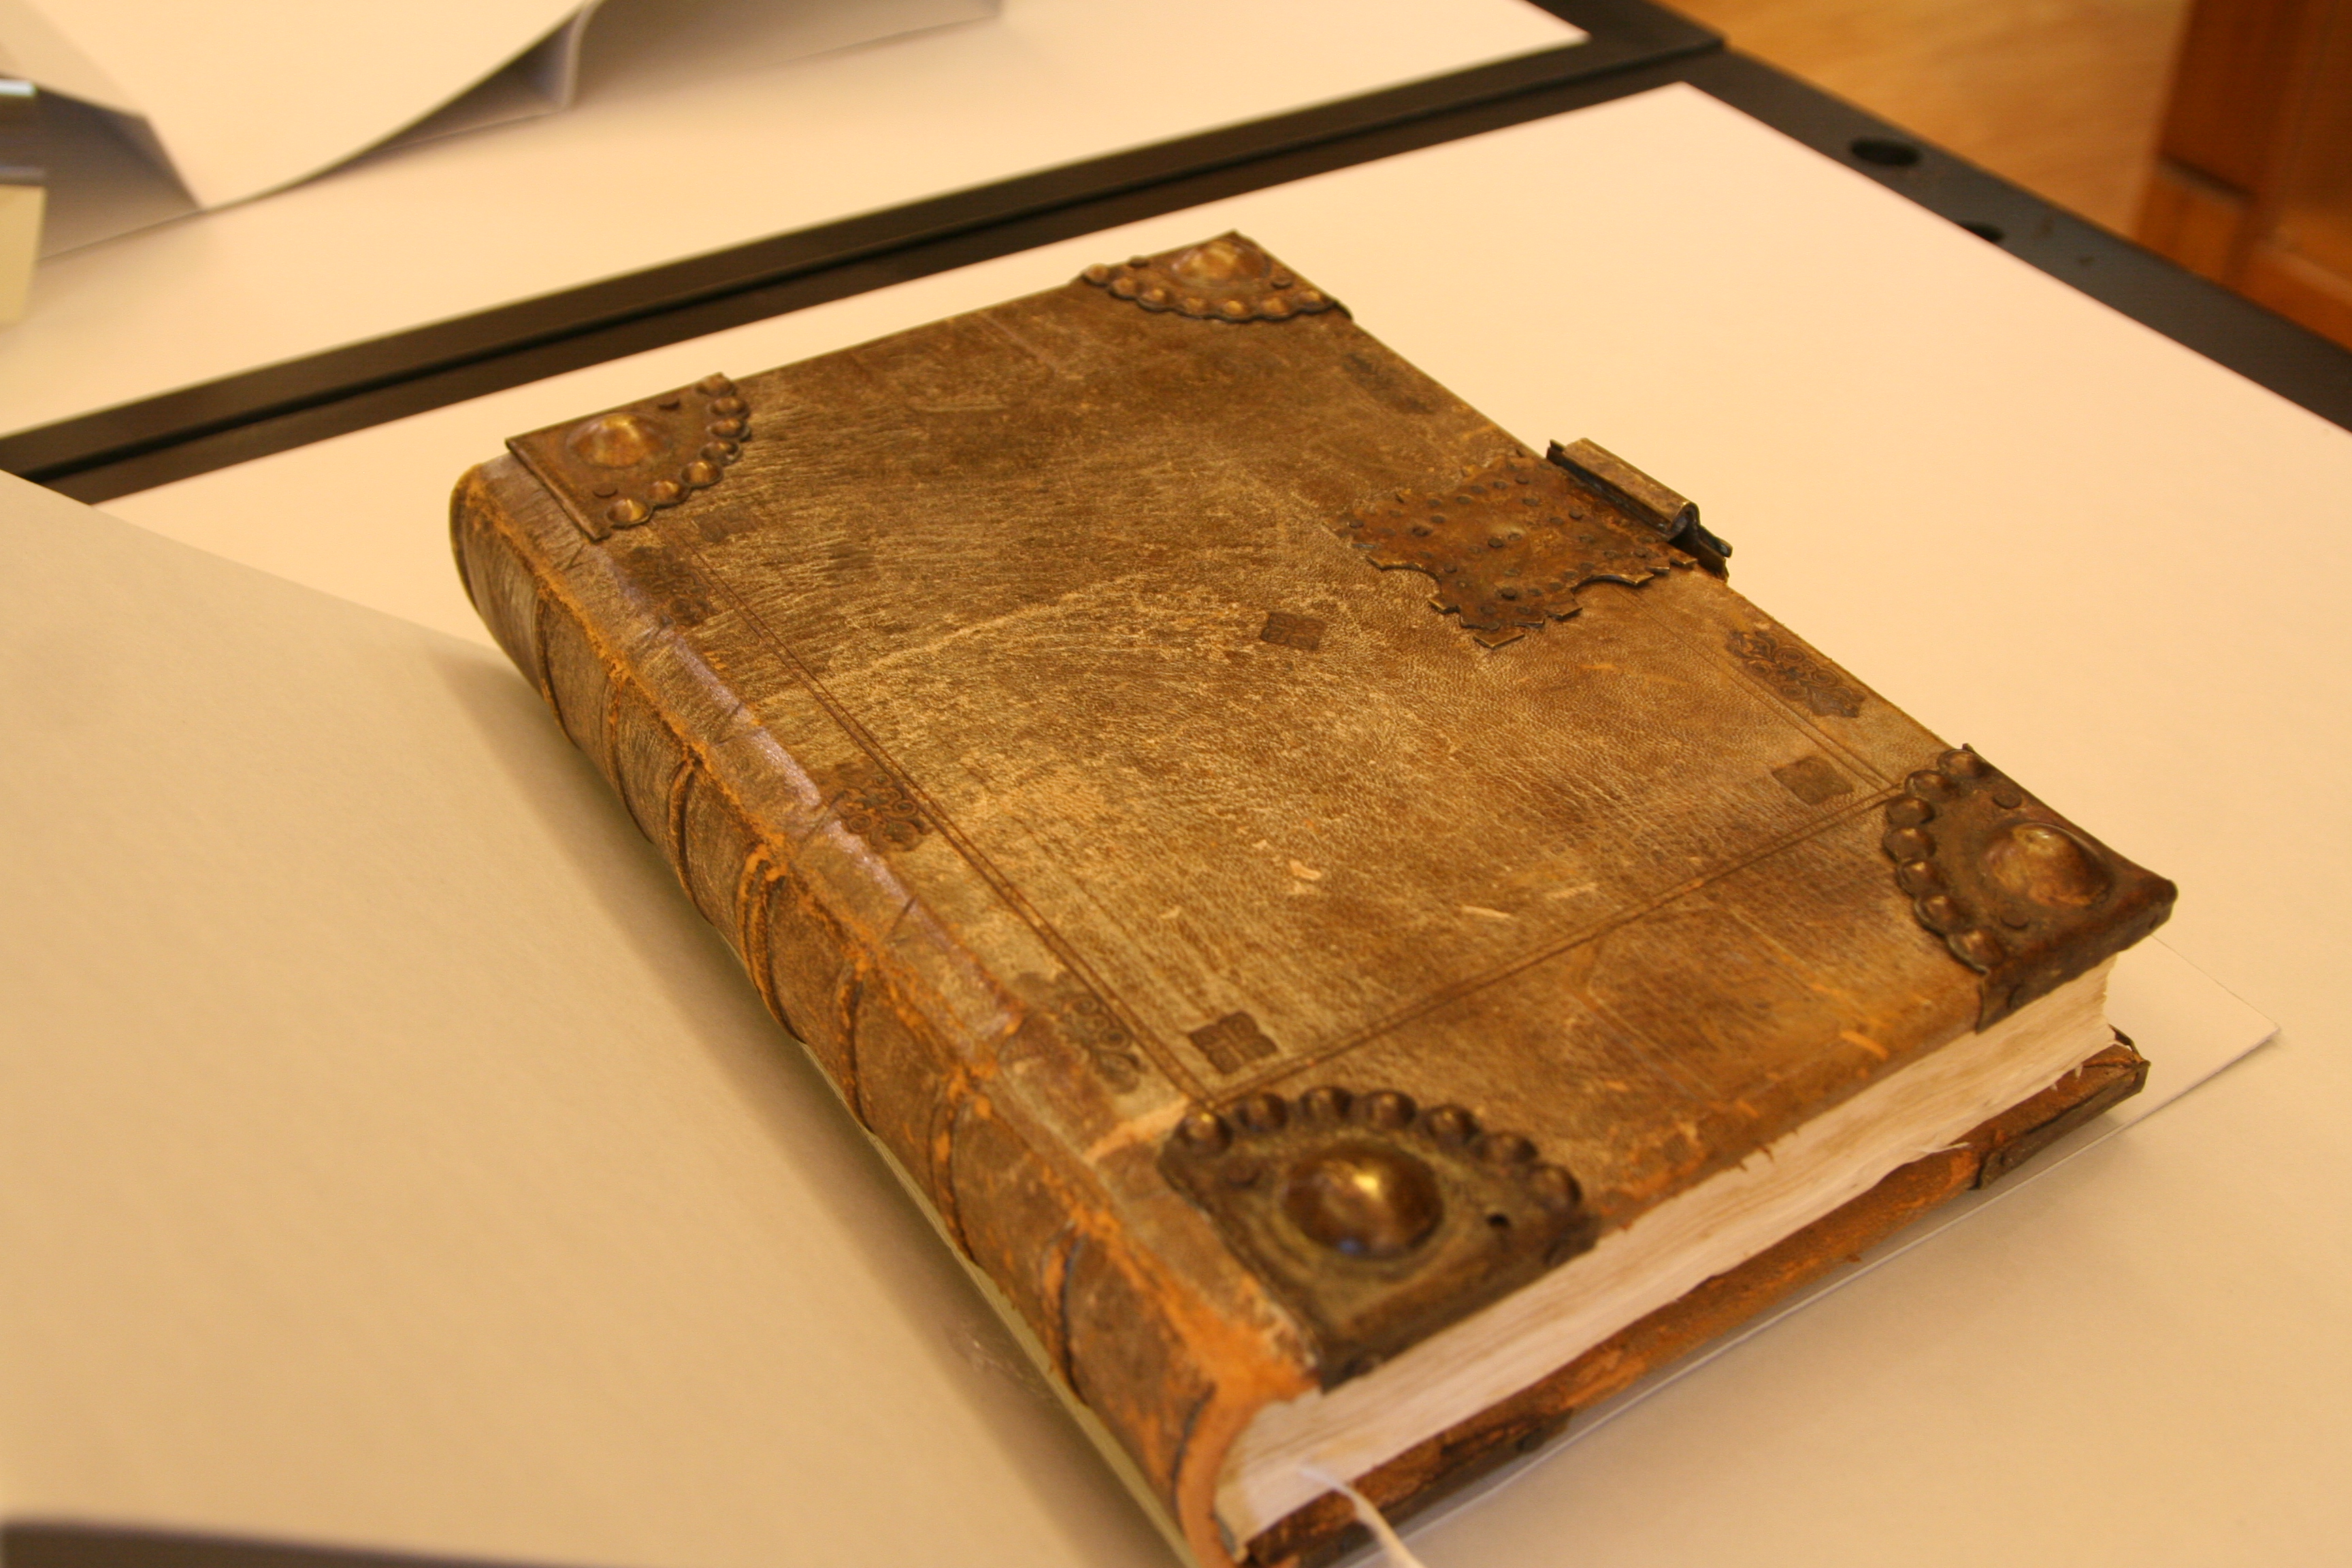 Η εντυπωσιακή βιβλιοδεσία του παραπάνω βιβλίου, κατ’ απομίμηση της βιβλιοδεσίας του 15ου αιώνα.